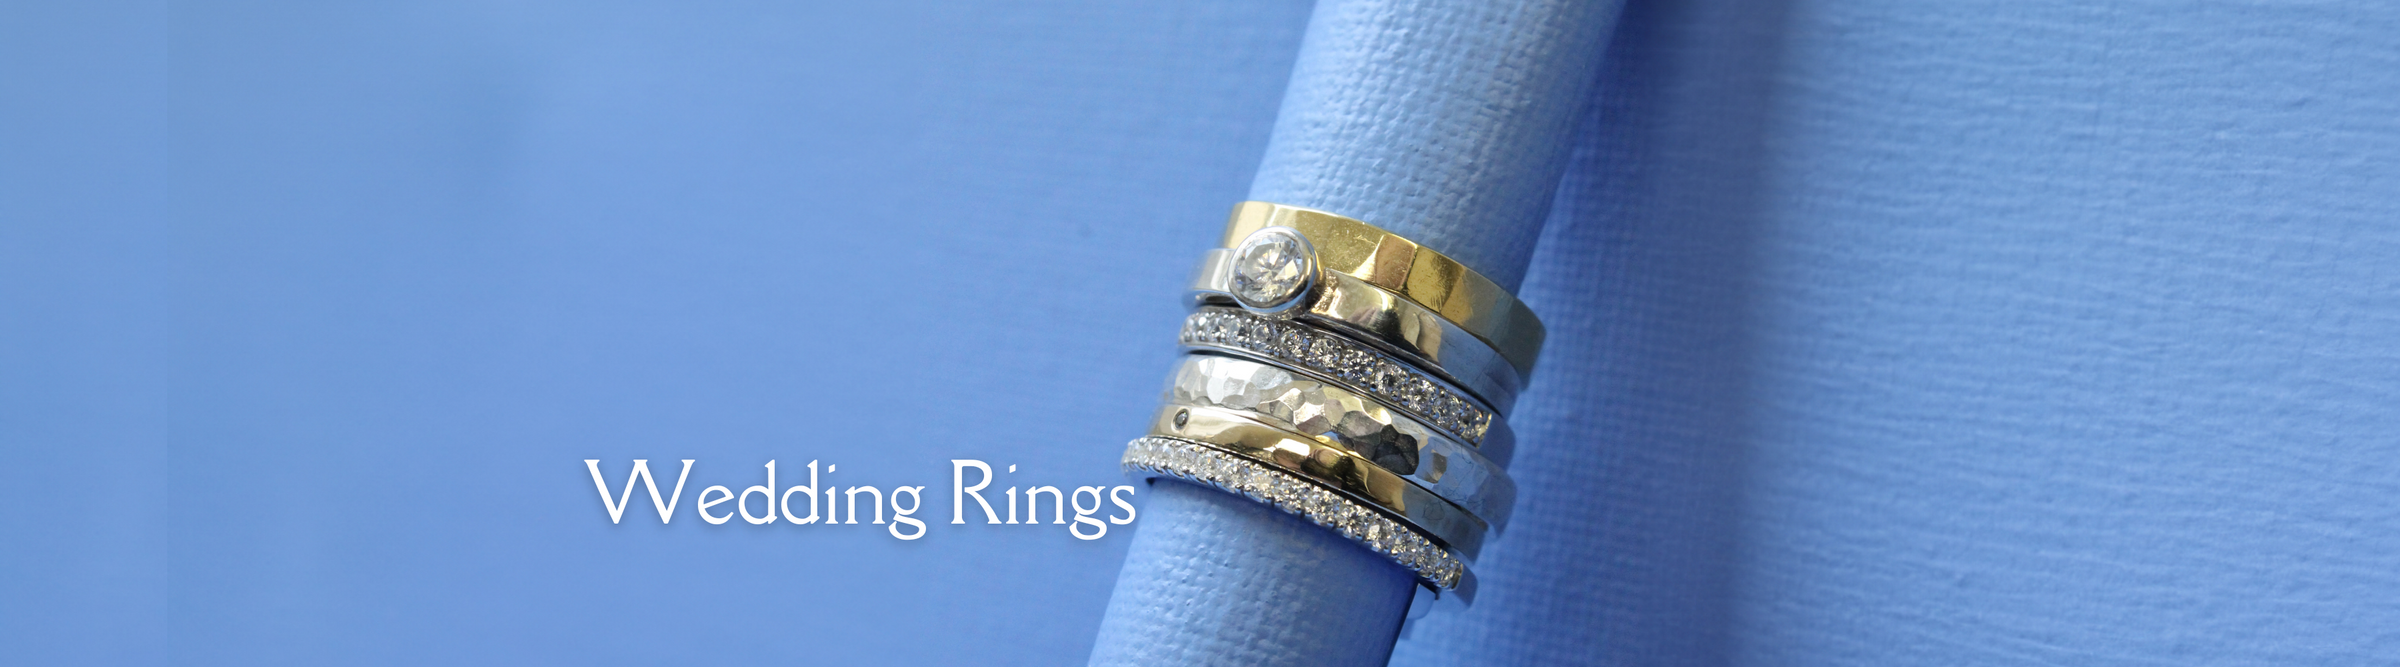 Wedding rings banner image